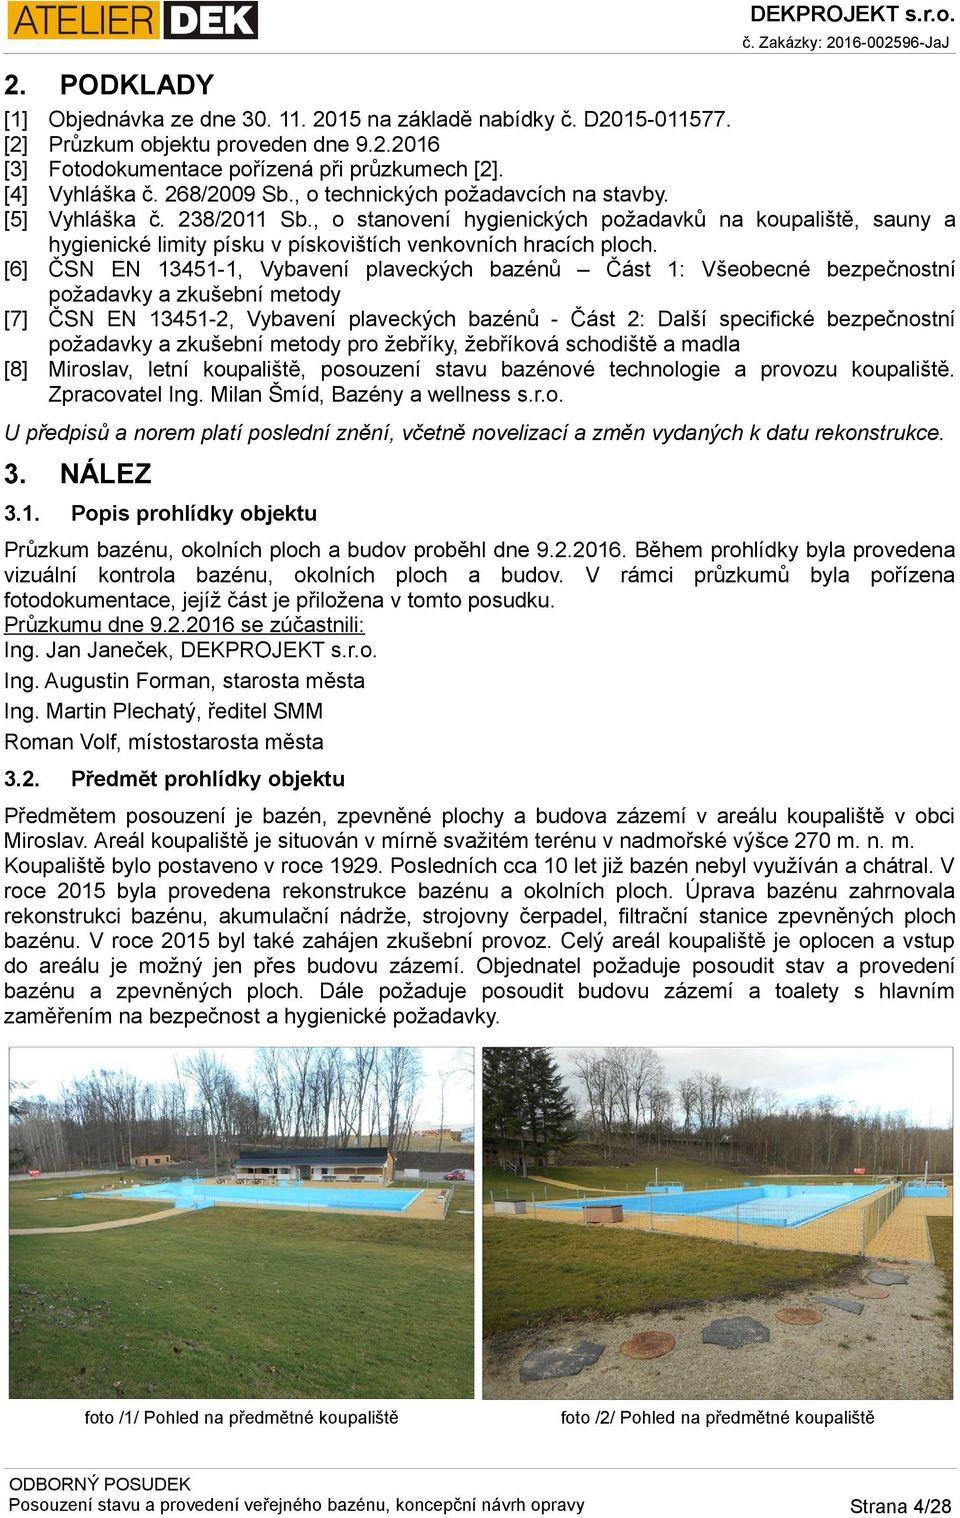 [6] ČSN EN 13451-1, Vybavení plaveckých bazénů Část 1: Všeobecné bezpečnostní požadavky a zkušební metody [7] ČSN EN 13451-2, Vybavení plaveckých bazénů - Část 2: Další specifické bezpečnostní